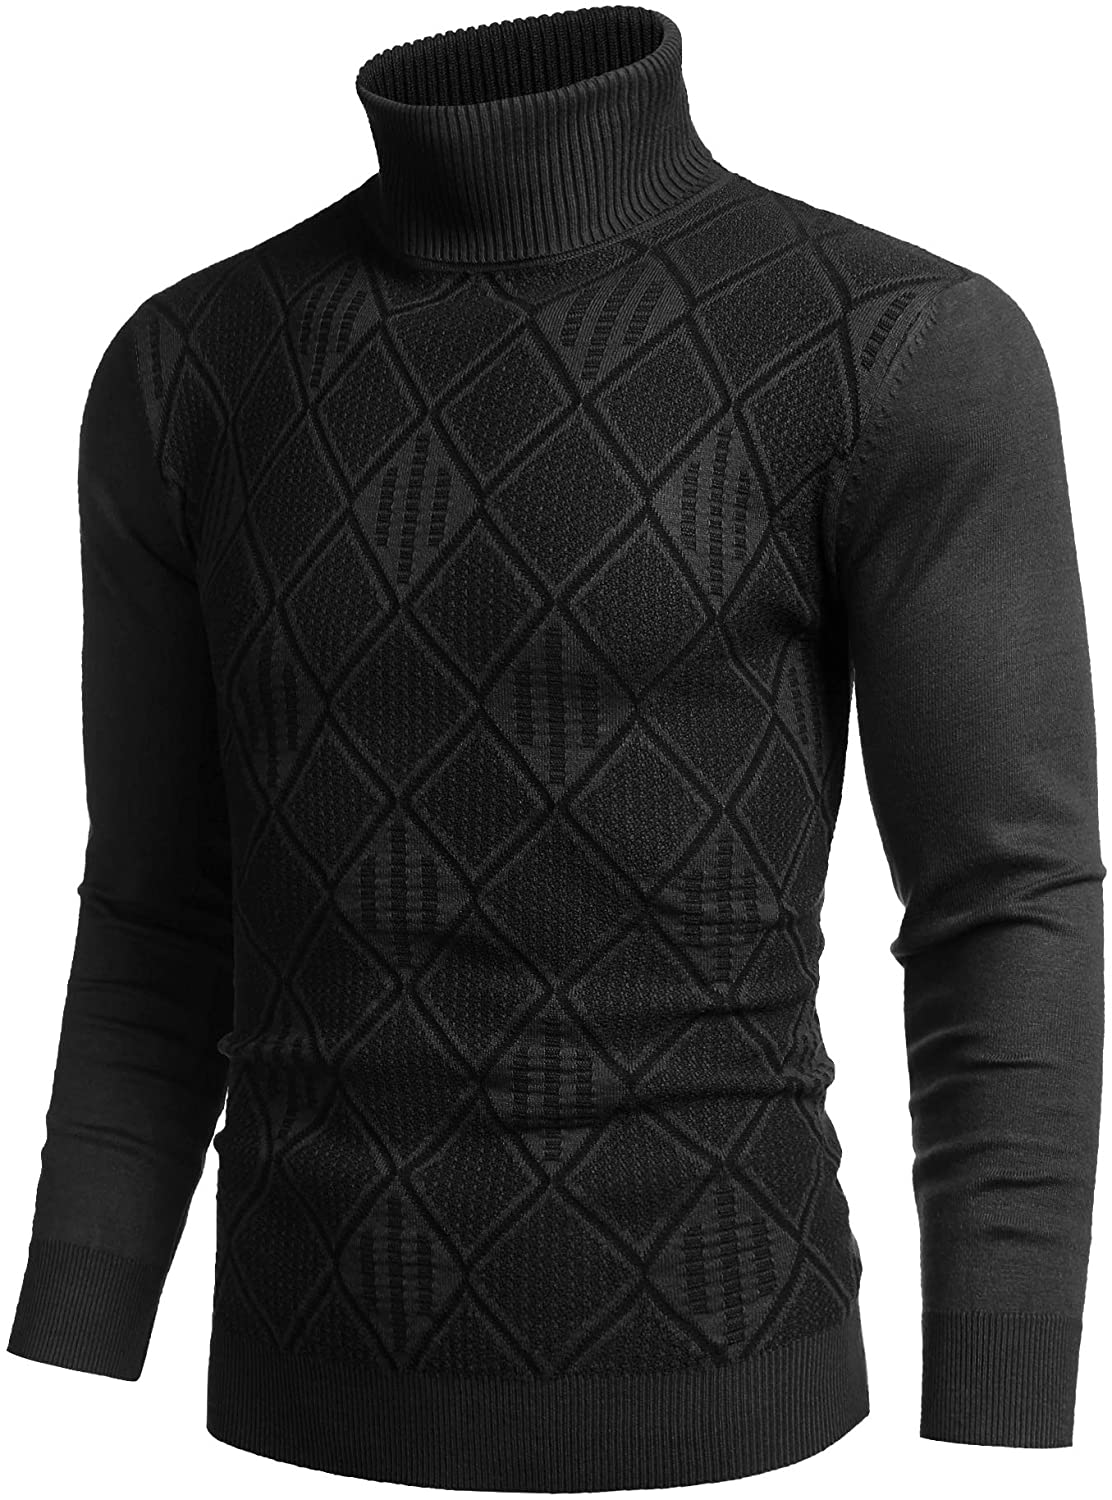 COOFANDY Men's Slim Fit Turtleneck Sweaters Rhombus Lightweight Cotton ...